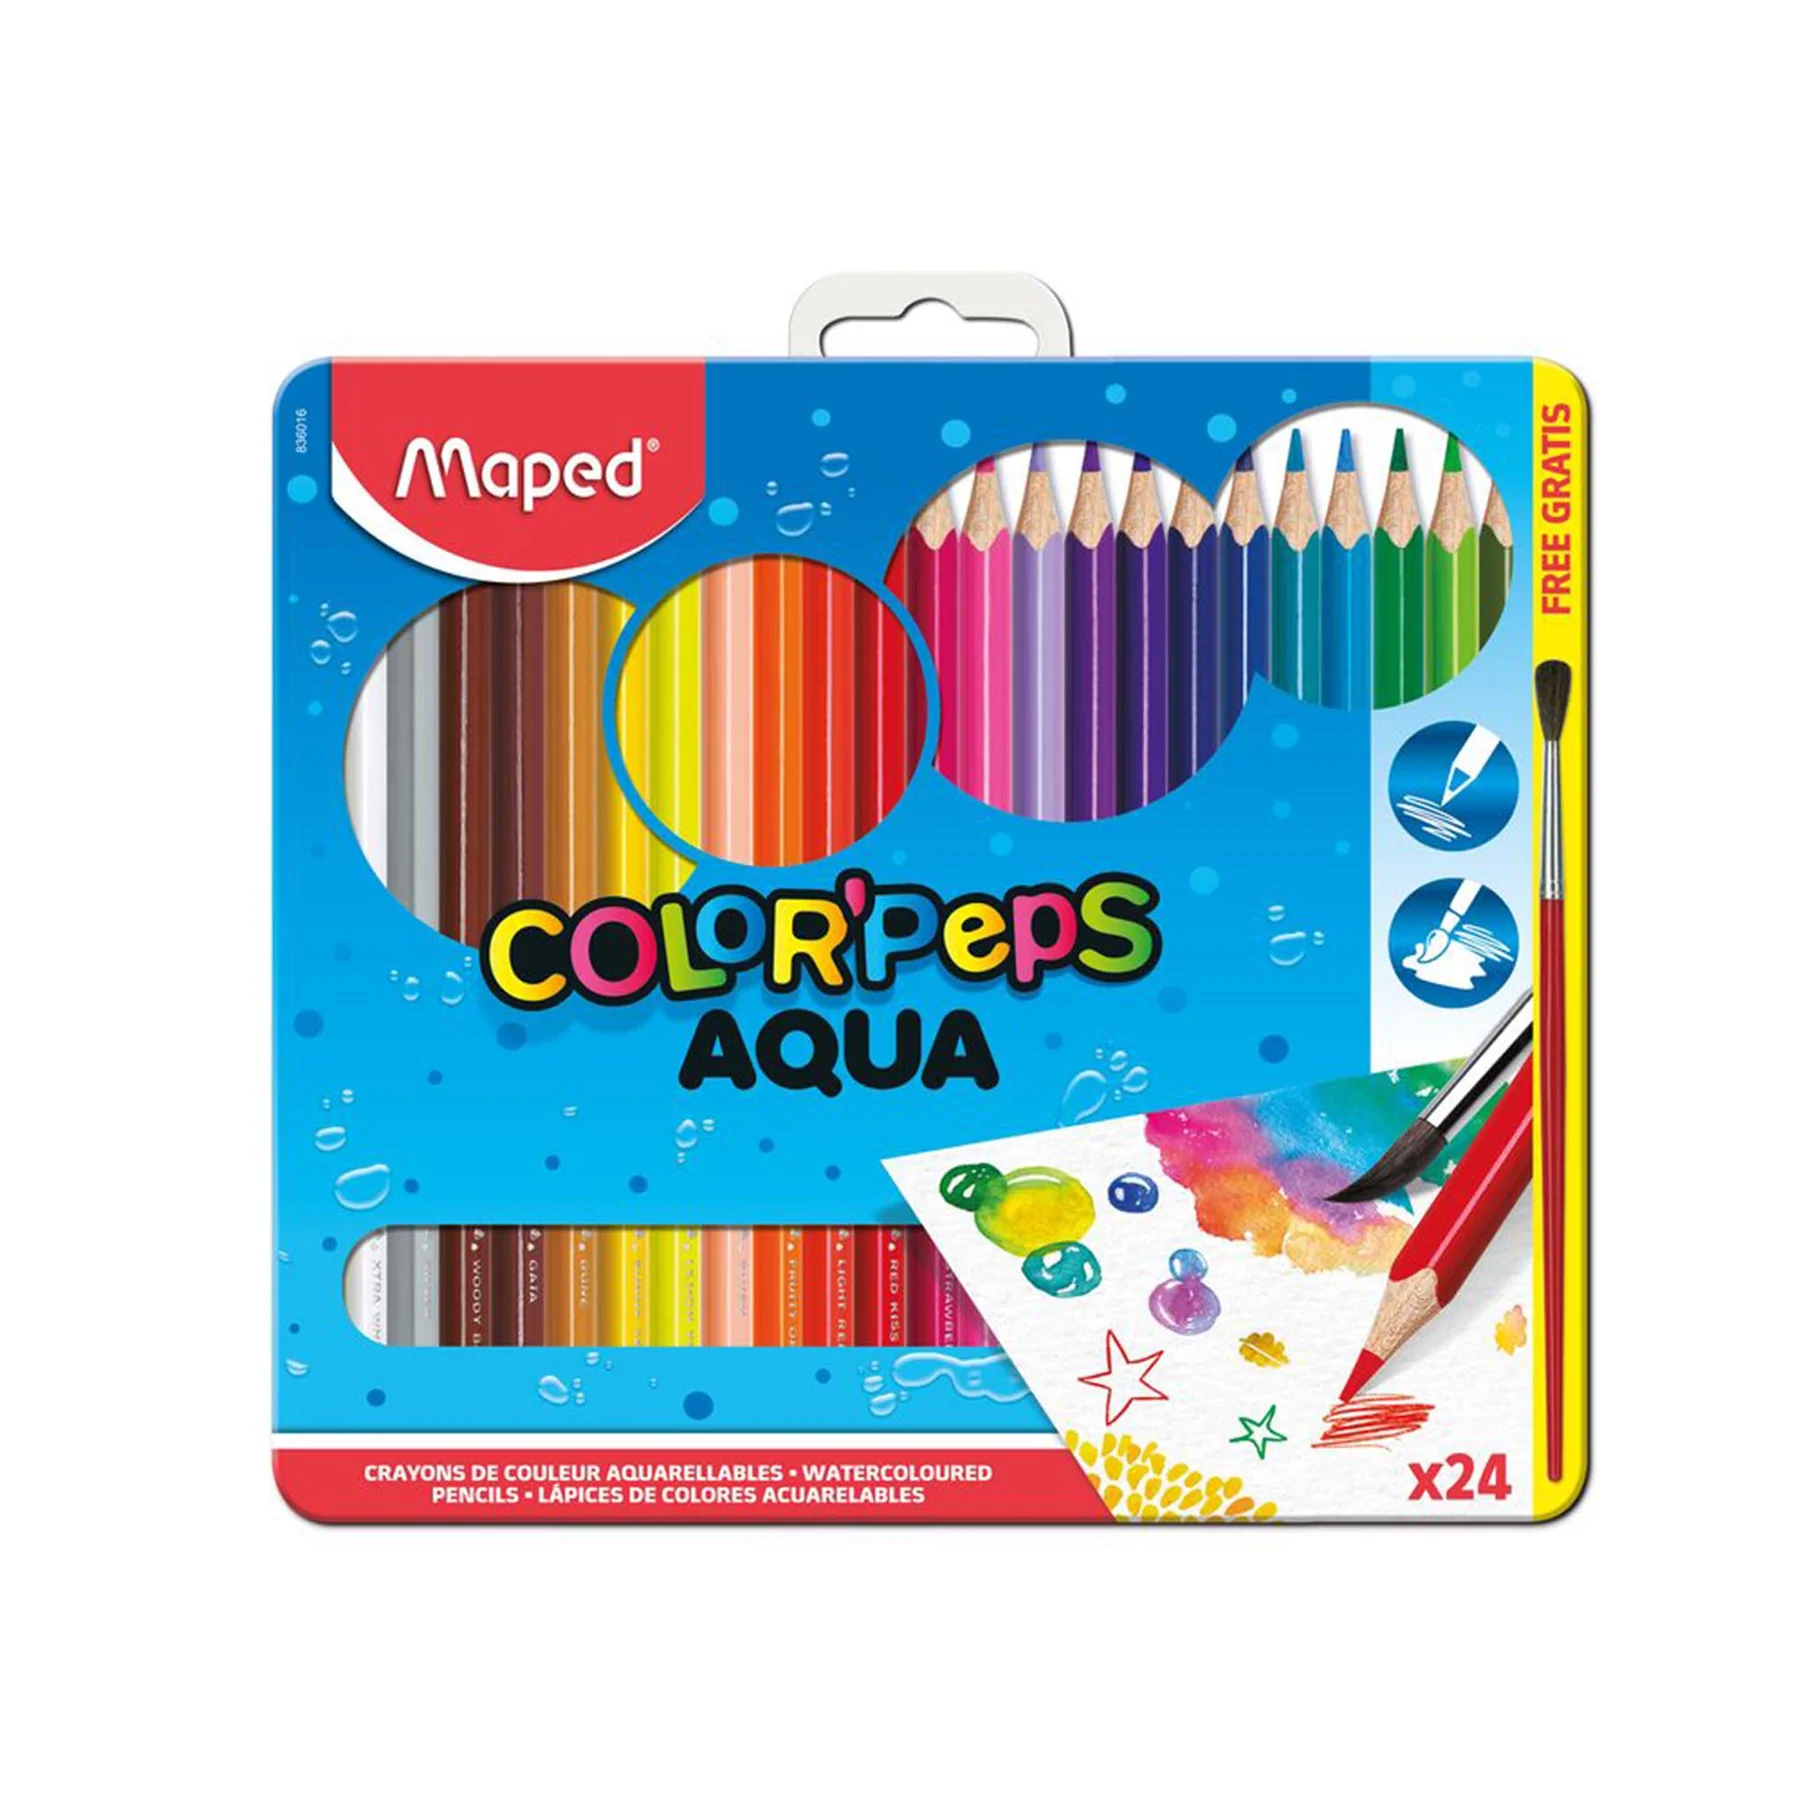 Aqua - Colour pencils